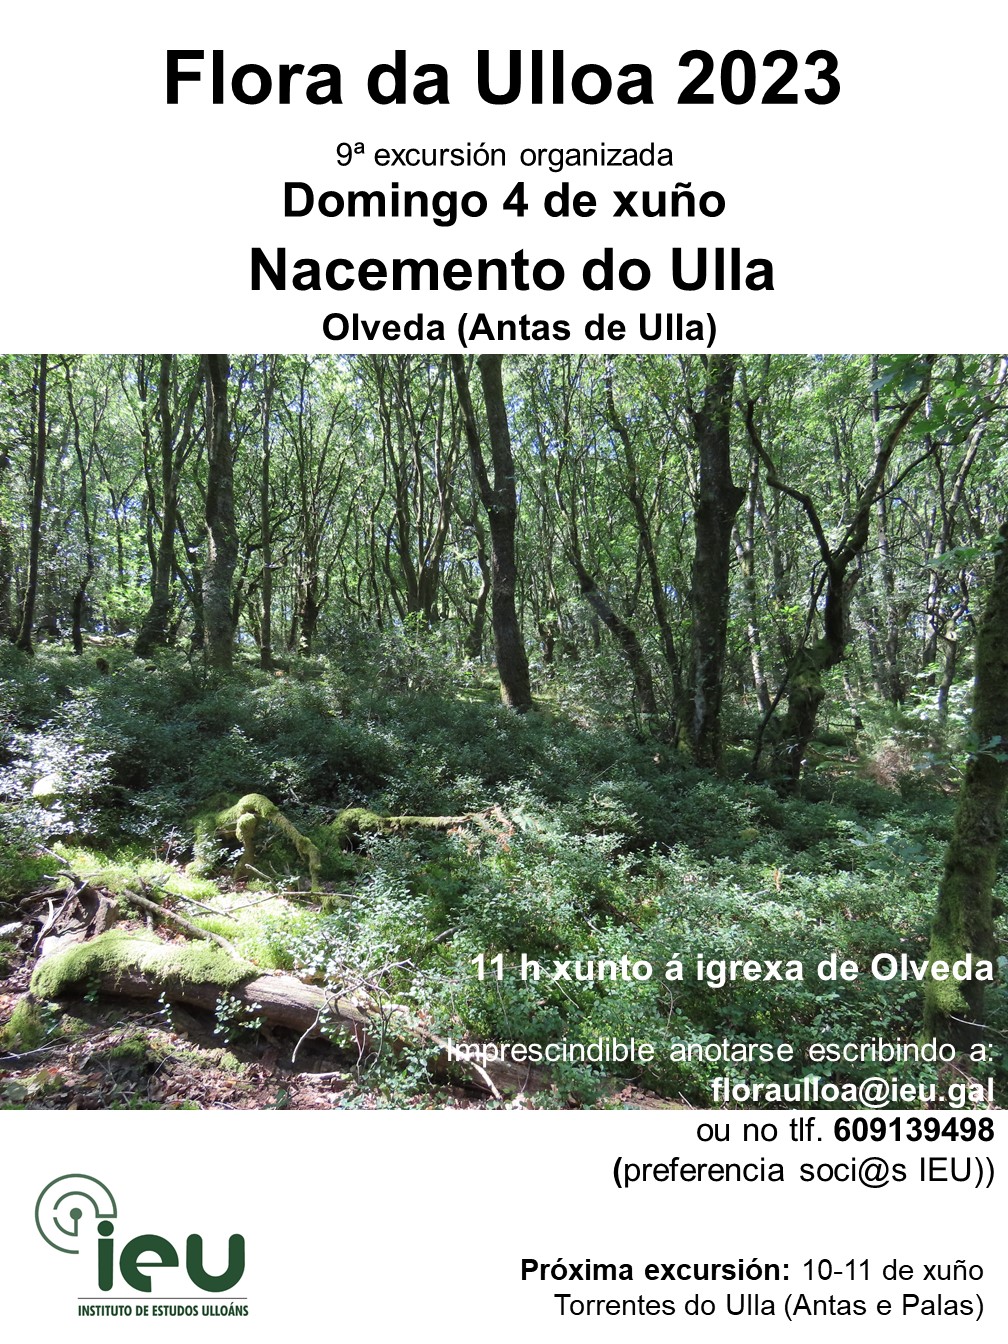 Excursión Flora da Ulloa 9ª 2023, 4-6-2023, Nacemento do Ulla, Instituto de Estudos Ulloáns